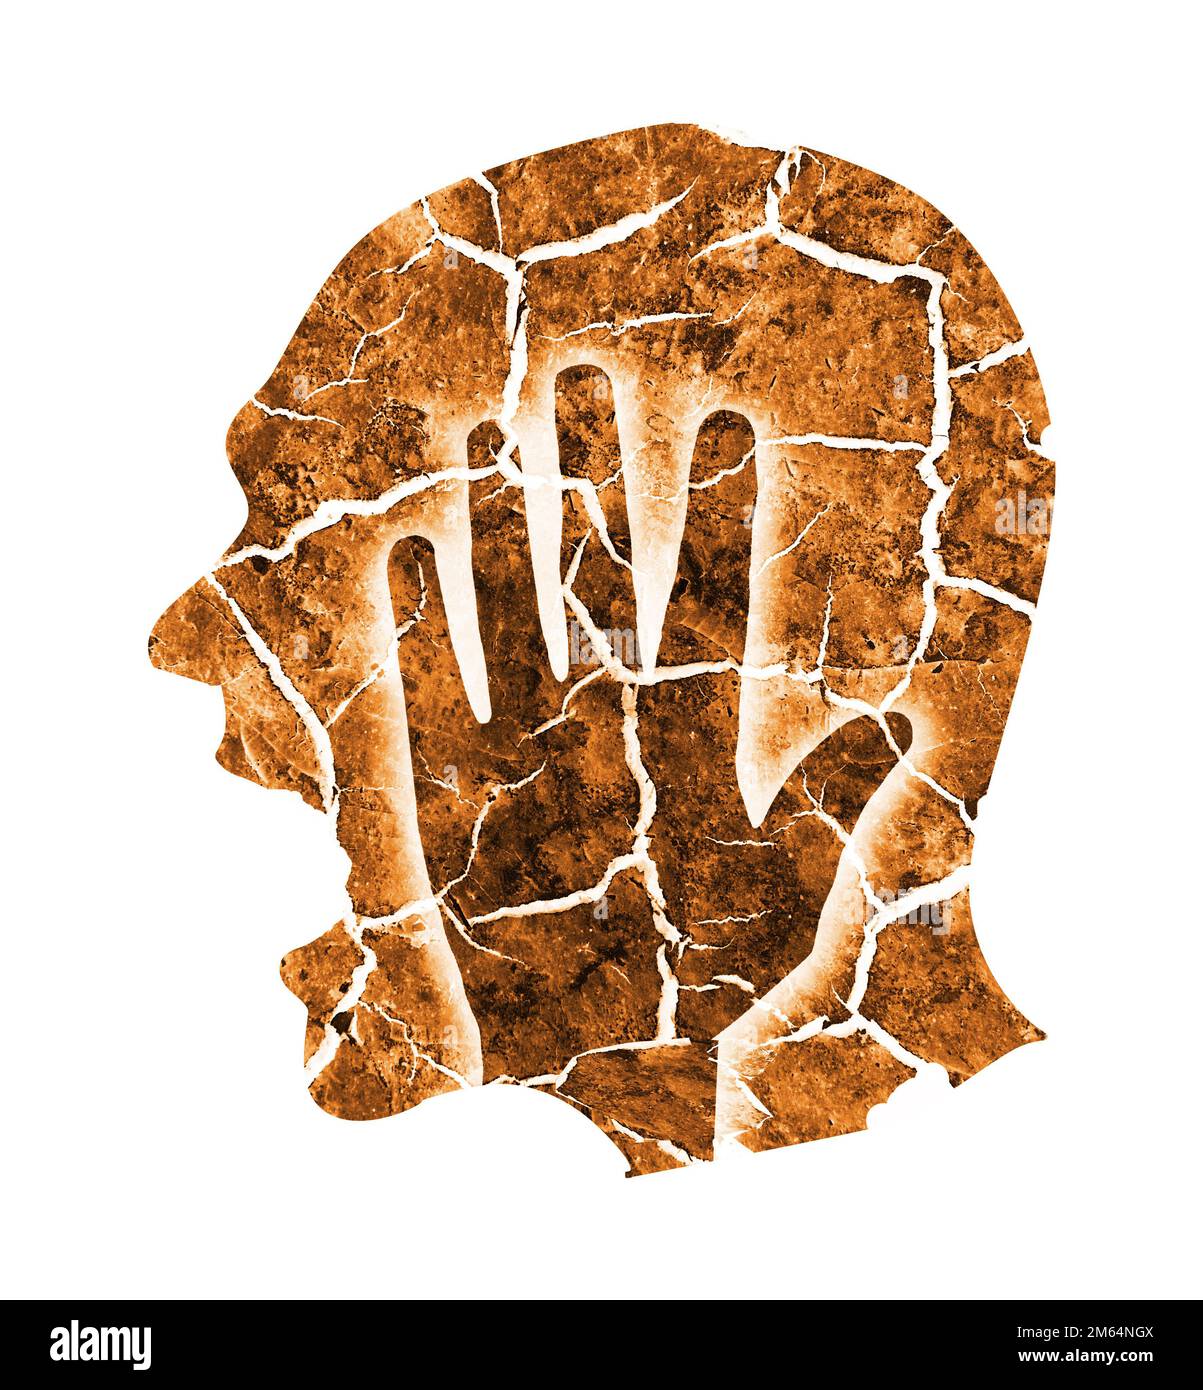 Kopfschmerz Migränedepression. Männliche Silhouette mit trockener zerbrochener Erde symbolisiert Wahnsinn, Depression, Kopfschmerzen. Ein Mann, der seinen Kopf hält. Stockfoto